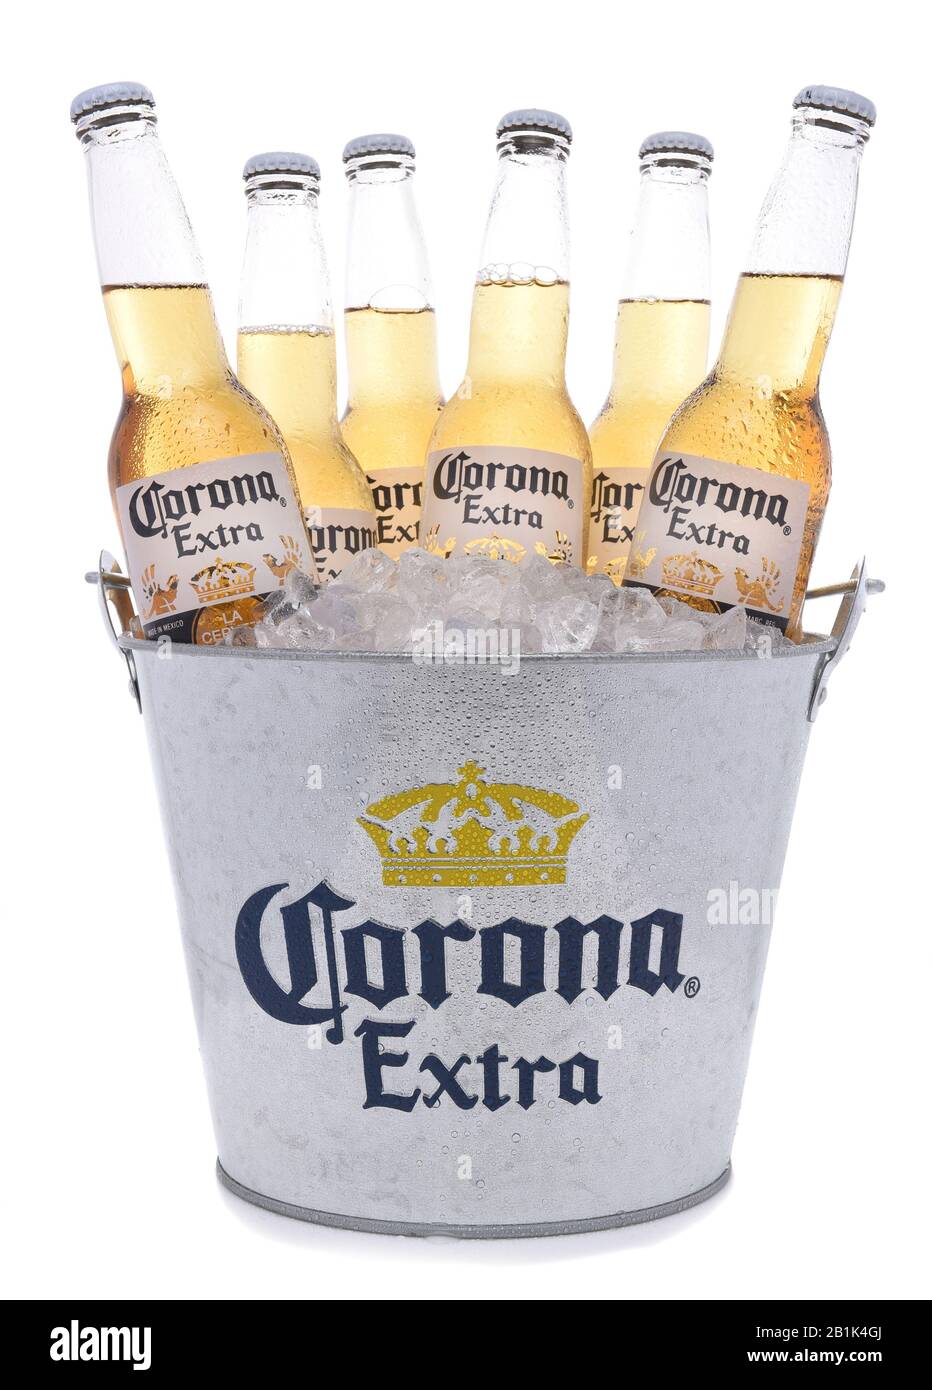 Irvine, CALIFORNIA -27 DE NOVIEMBRE de 2017: Cubo de botellas de cerveza extra Corona. Corona es la cerveza importada más popular en los Estados Unidos. Foto de stock